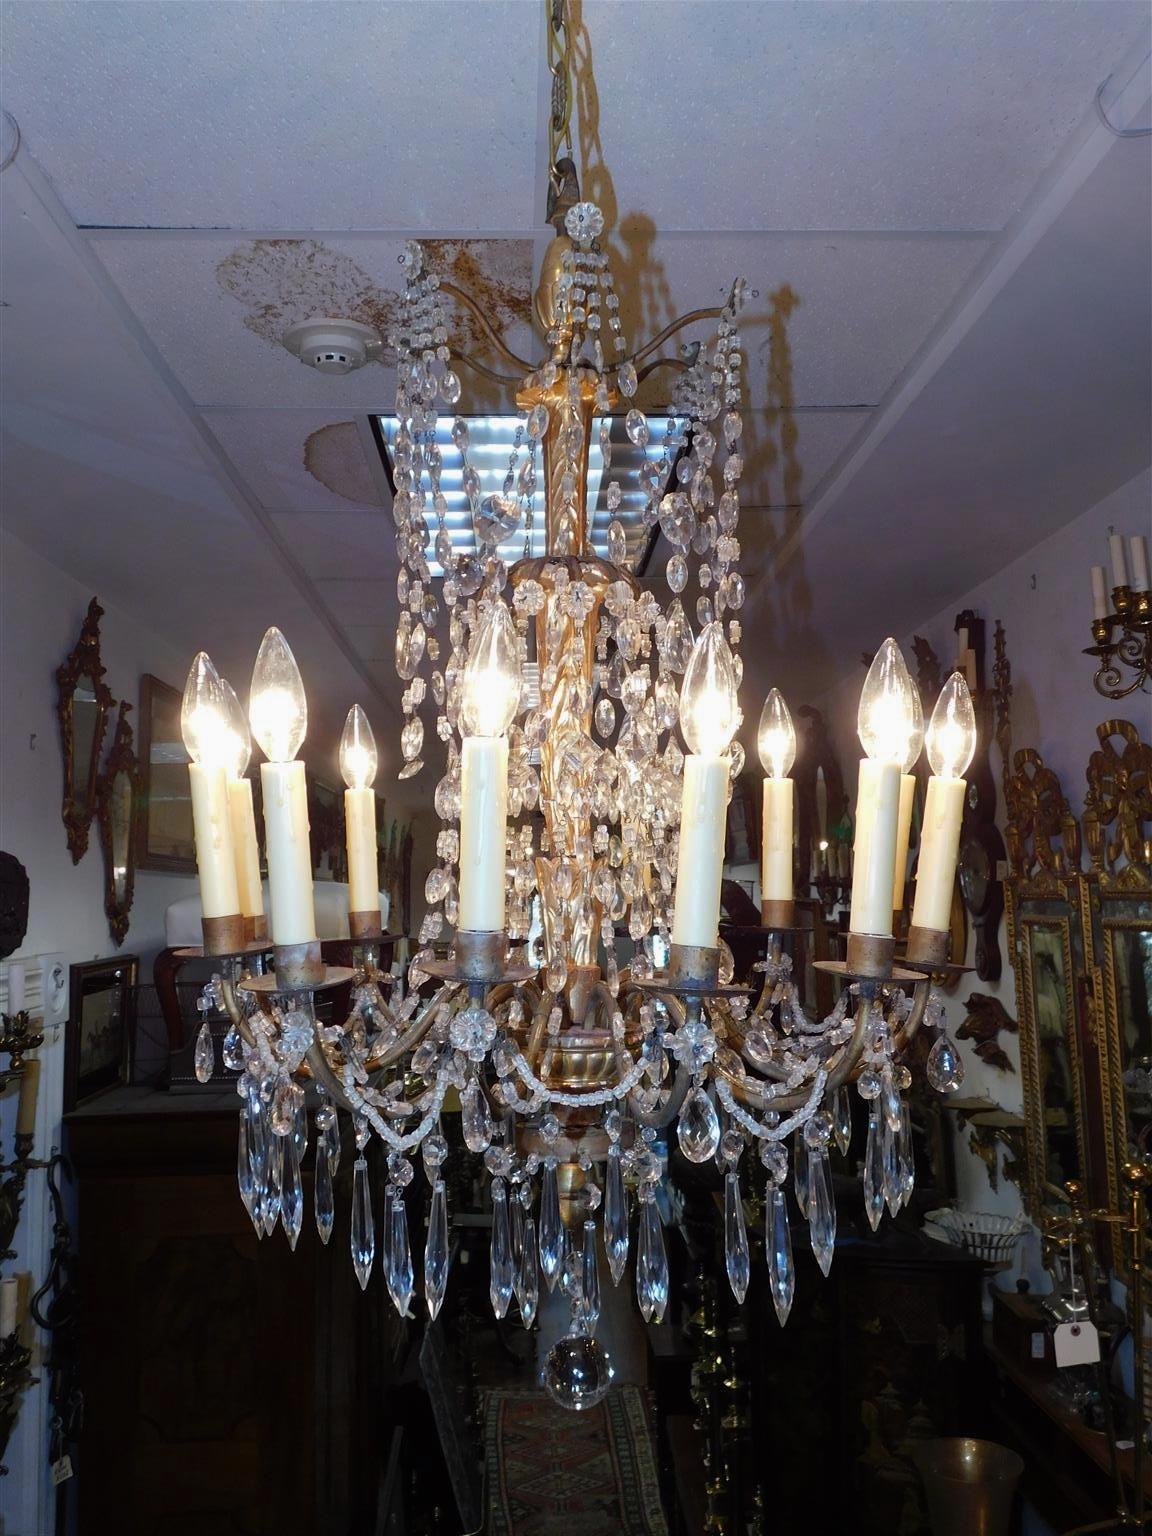 Italienischer Kronleuchter aus vergoldetem Holz und Kristall mit zehn hellen Bronzearmen. Ursprünglich mit Kerzen betrieben, wurde es elektrifiziert. Spätes 18. Jahrhundert